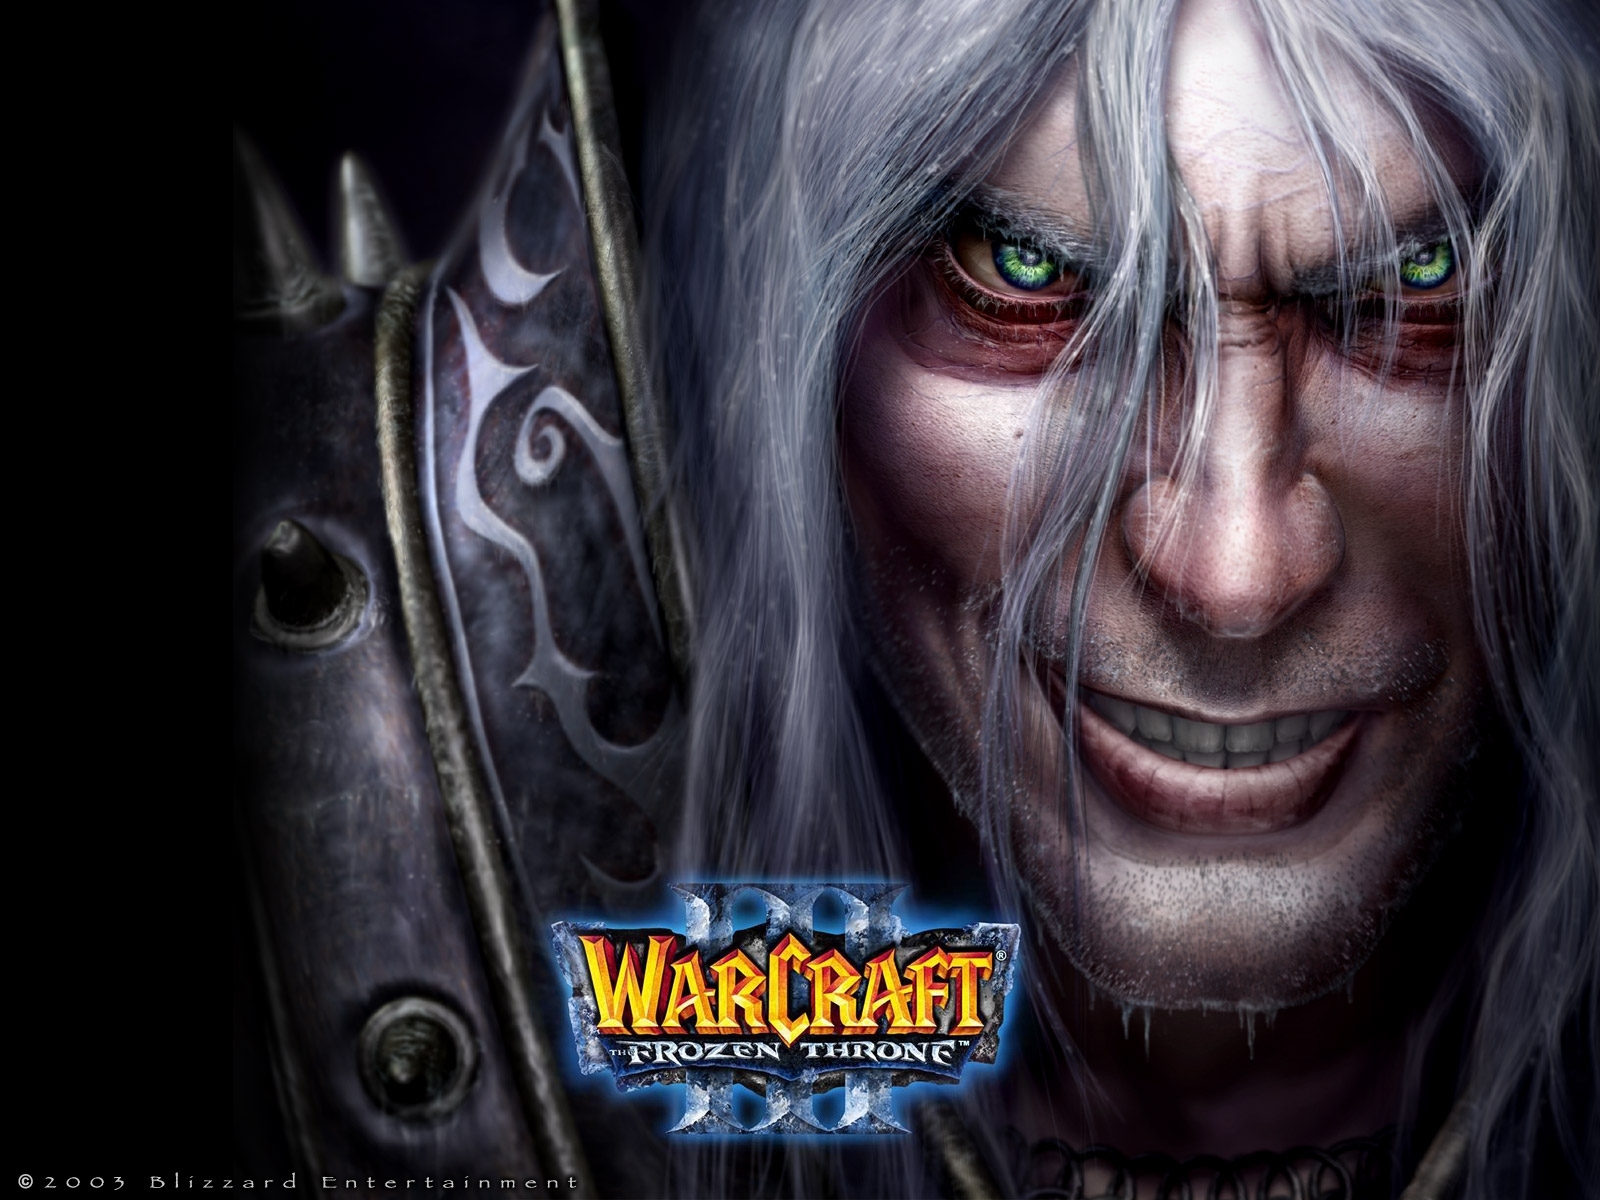 Скачать обои Warcraft на телефон бесплатно